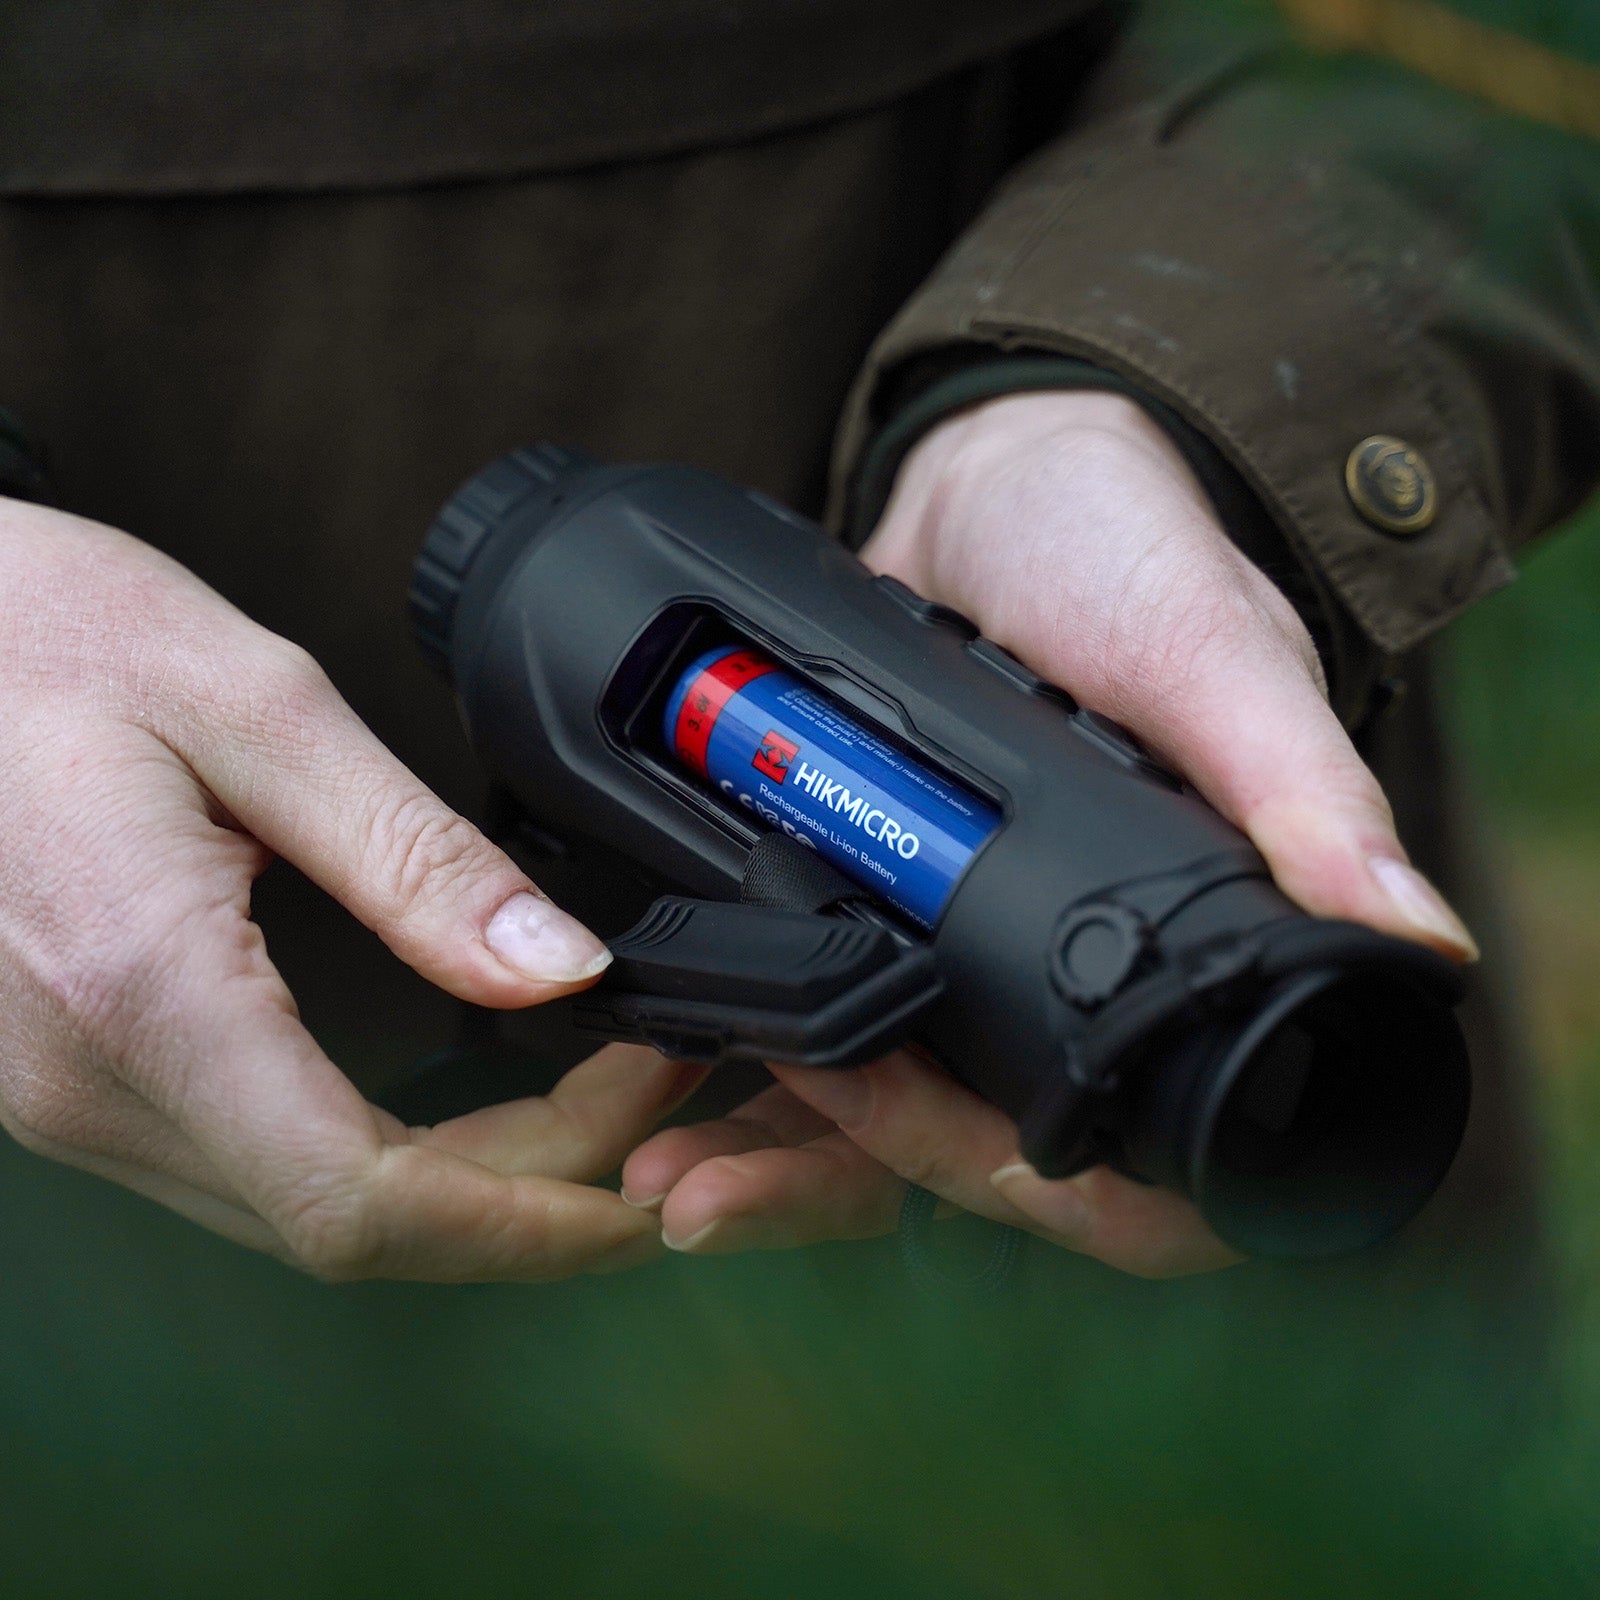 Es handelt sich hier um HIKMICRO Lynx Pro LH15 2.0 Wärmebildkamera für die Jagd.